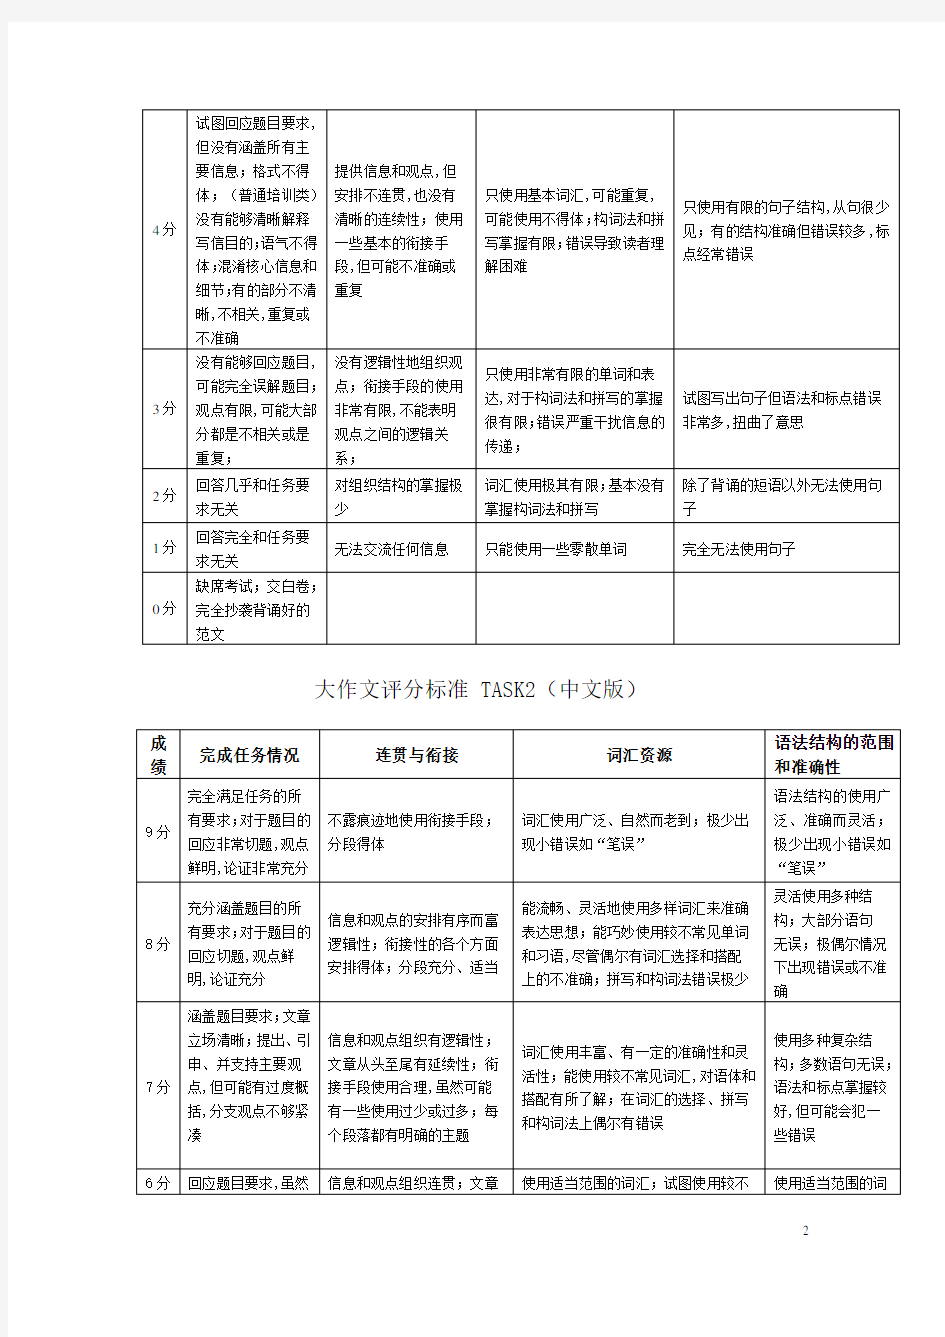 雅思写作评分标准-中文版